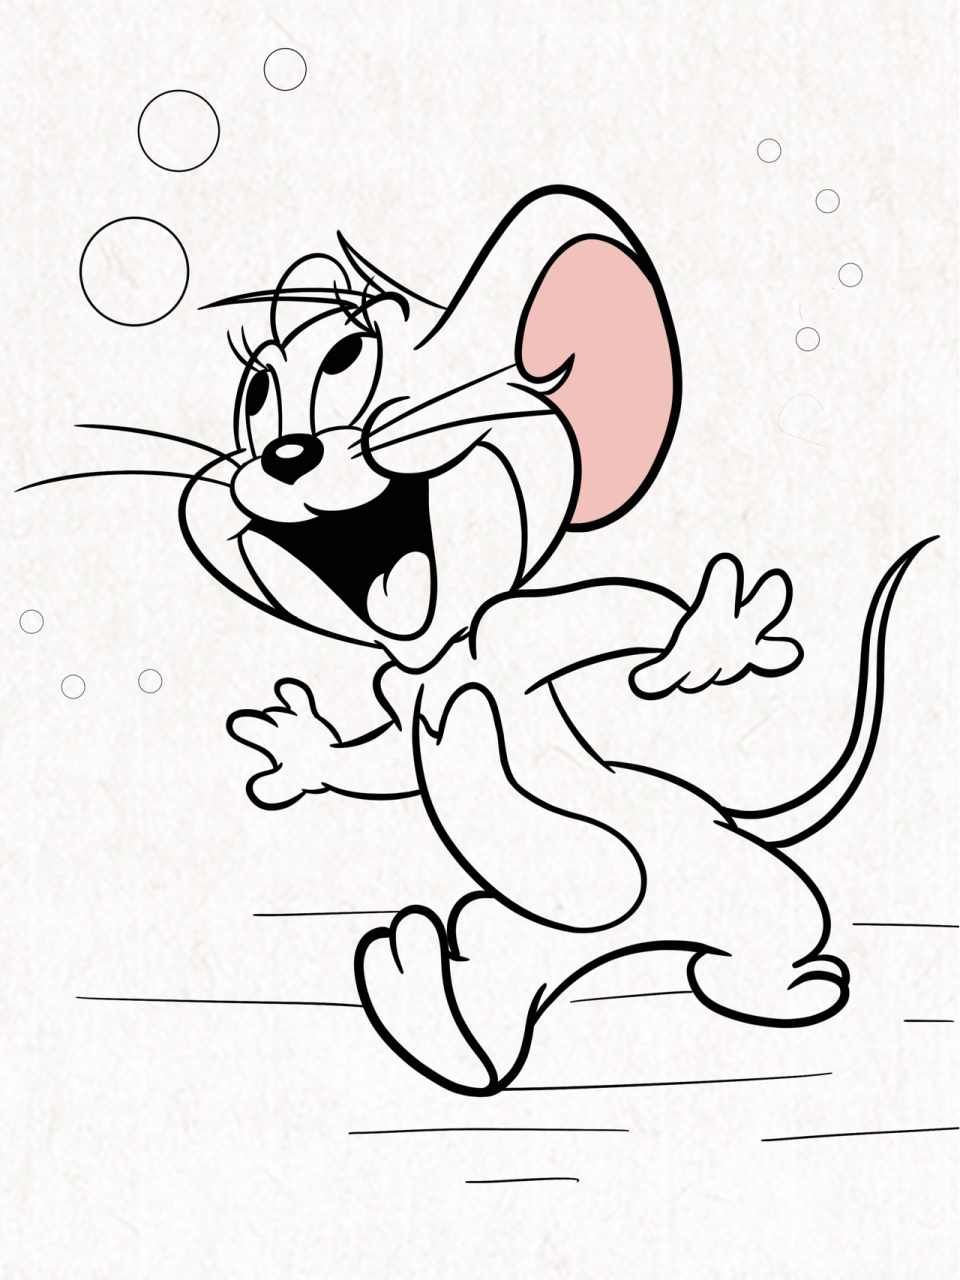 「简笔画」(100/06)老鼠99杰瑞·内含过程 99走杰瑞的路,让杰瑞